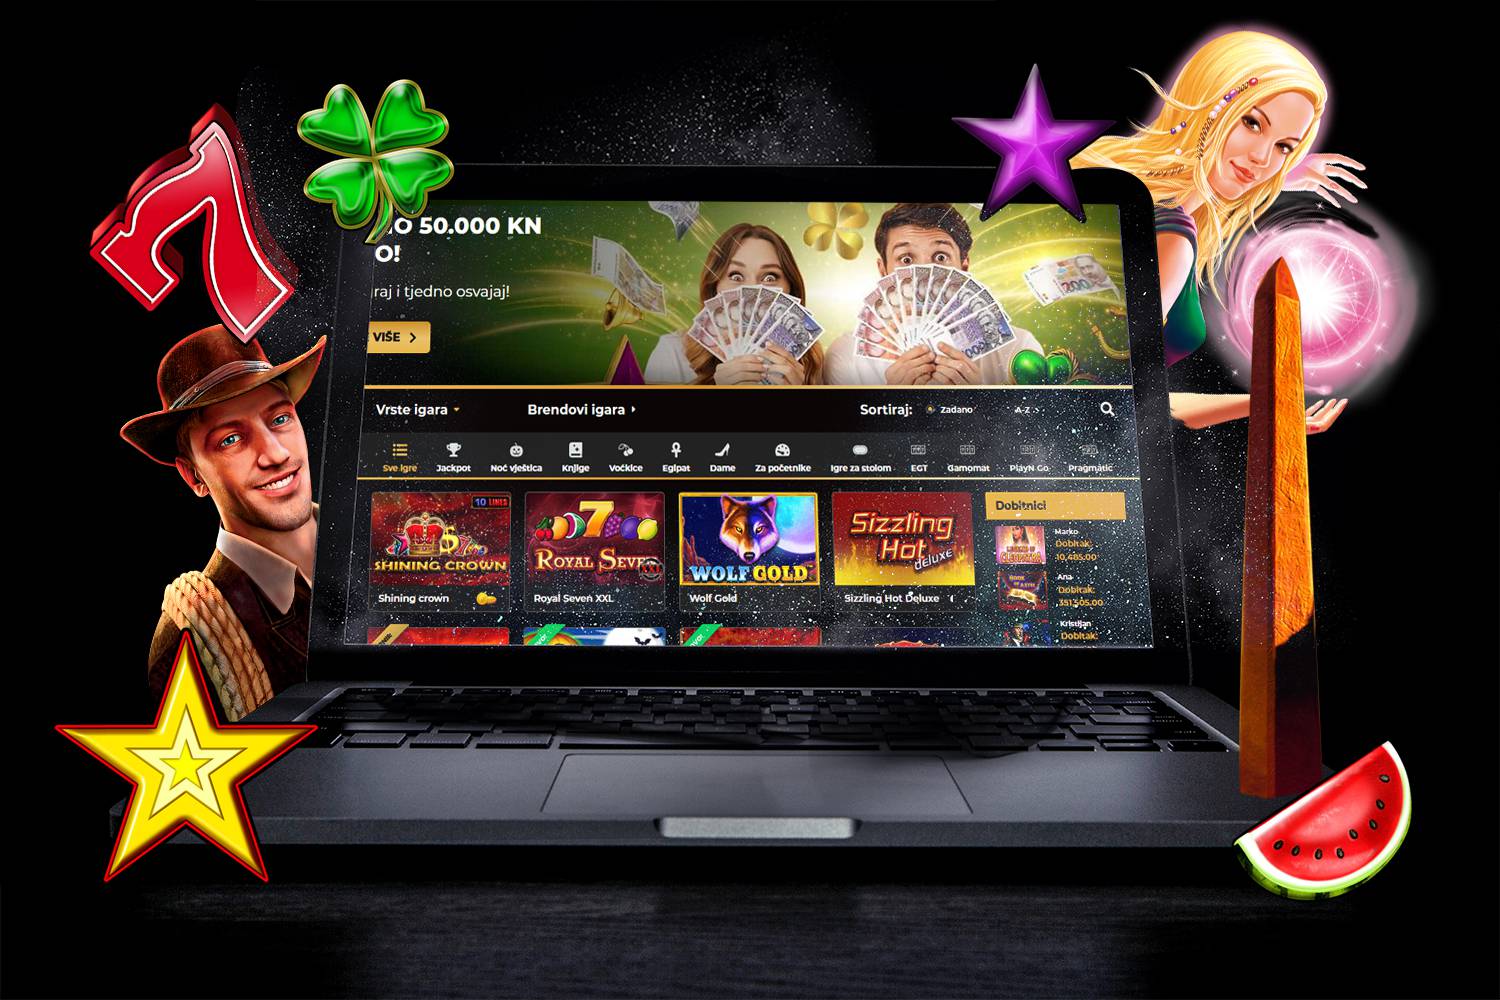 Online casino igre – zaigrajte odmah jednu od TOP 5 slot igrica! BEZ REGISTRACIJE